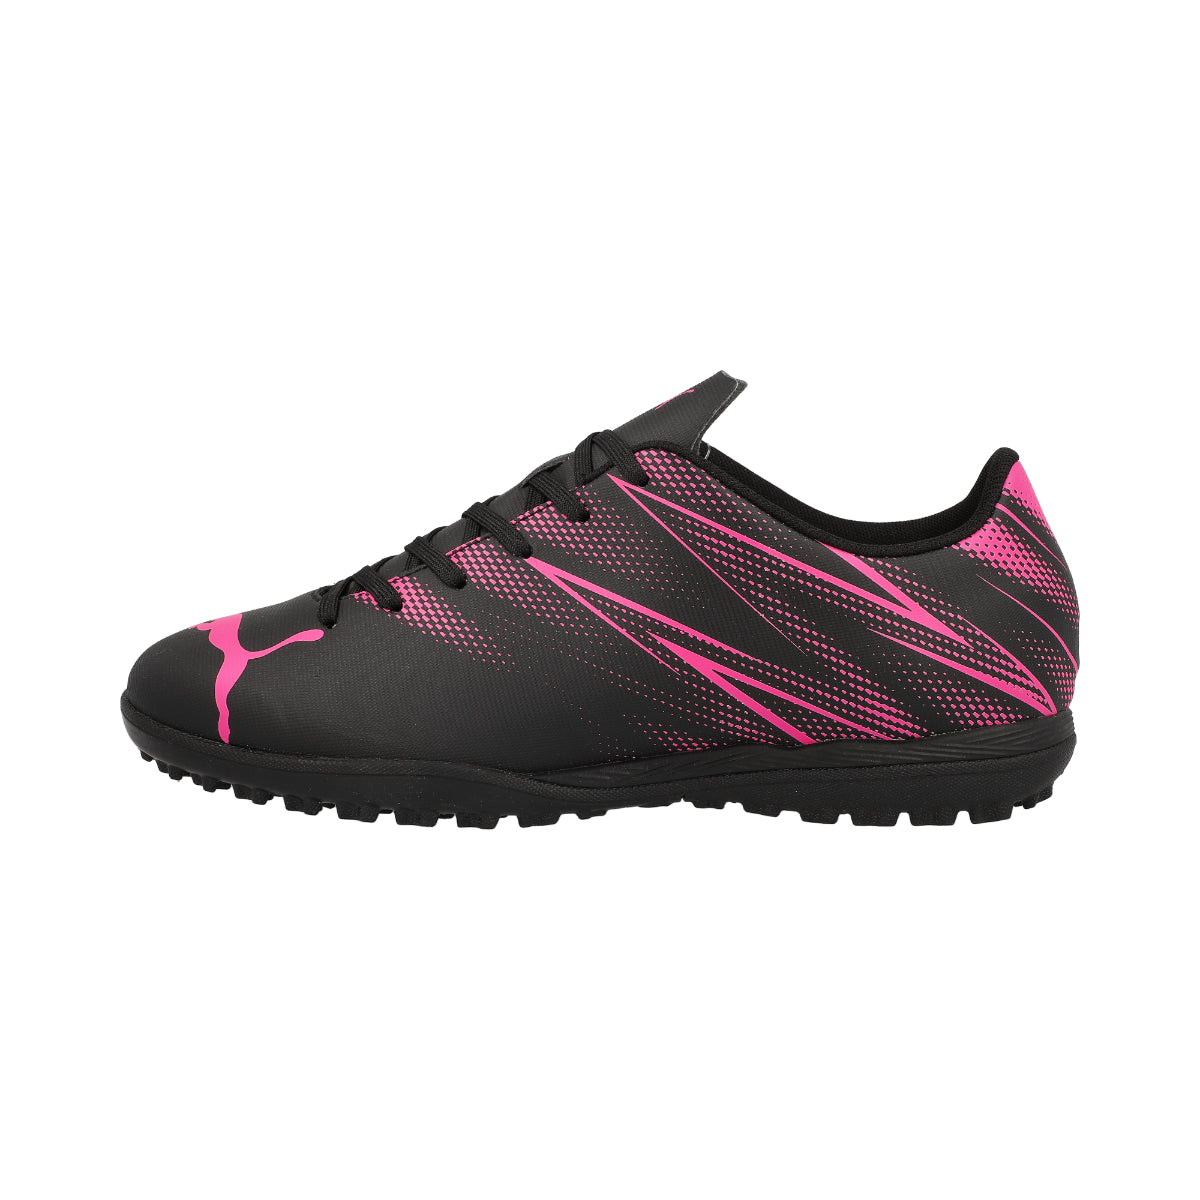 Puma Attacanto Junior TT Football Boots - 4 - Black/Pink